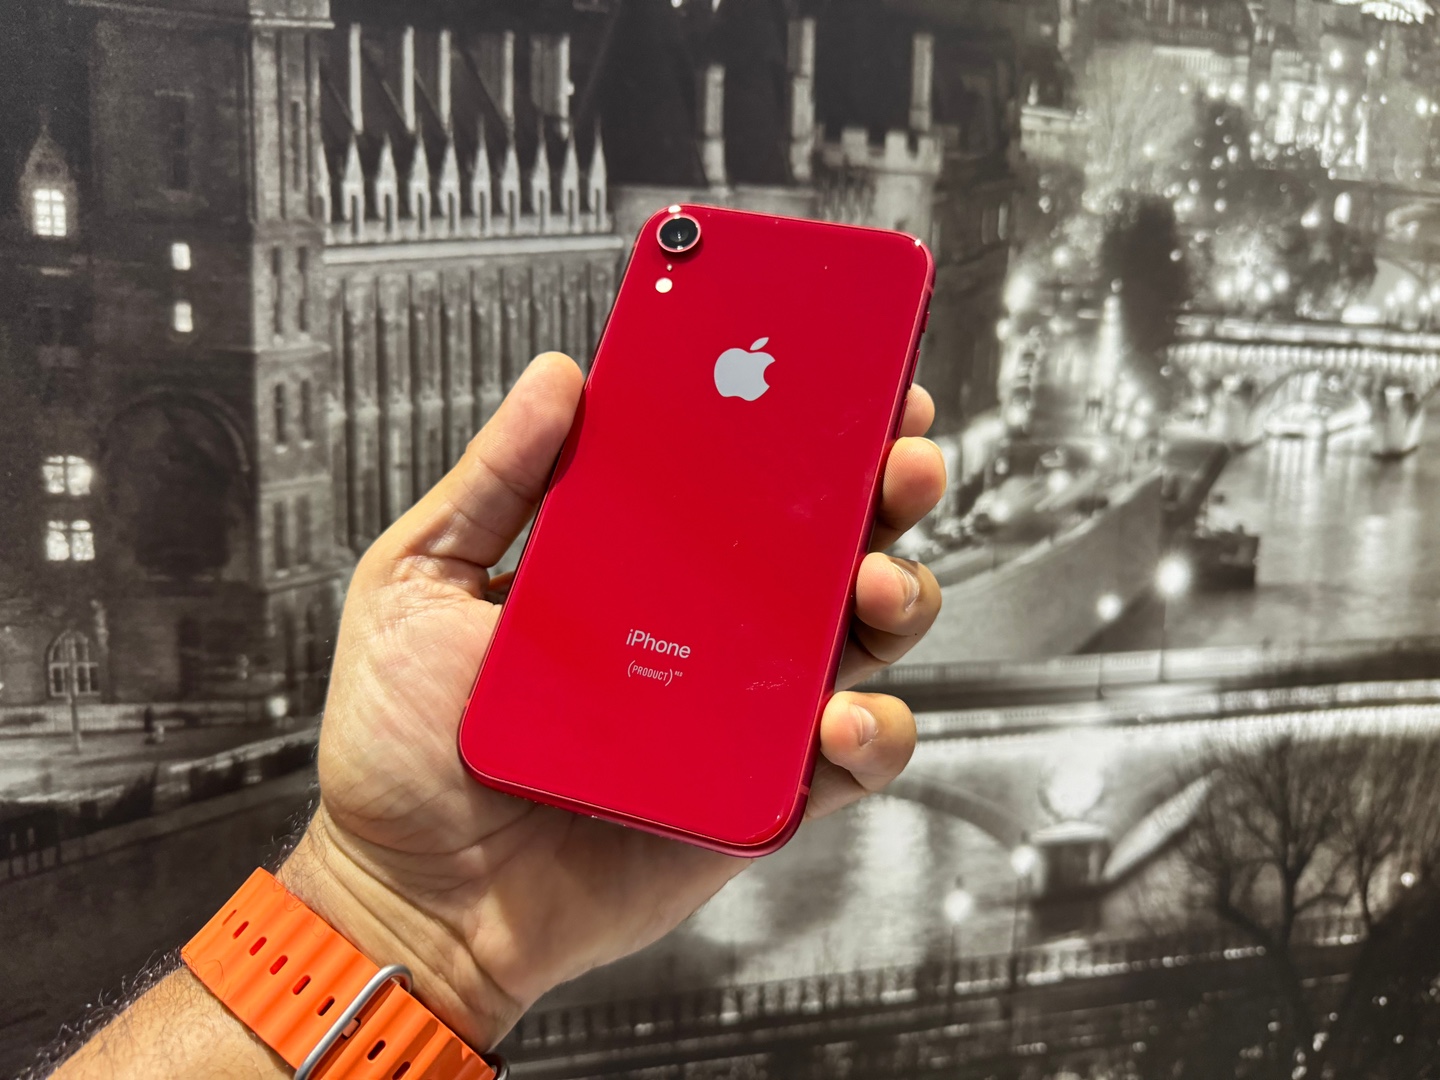 celulares y tabletas - iPhone XR 64GB Red (Product) Usado, Desbloqueado, Garantia, RD$ 13,400 | TIENDA! 0